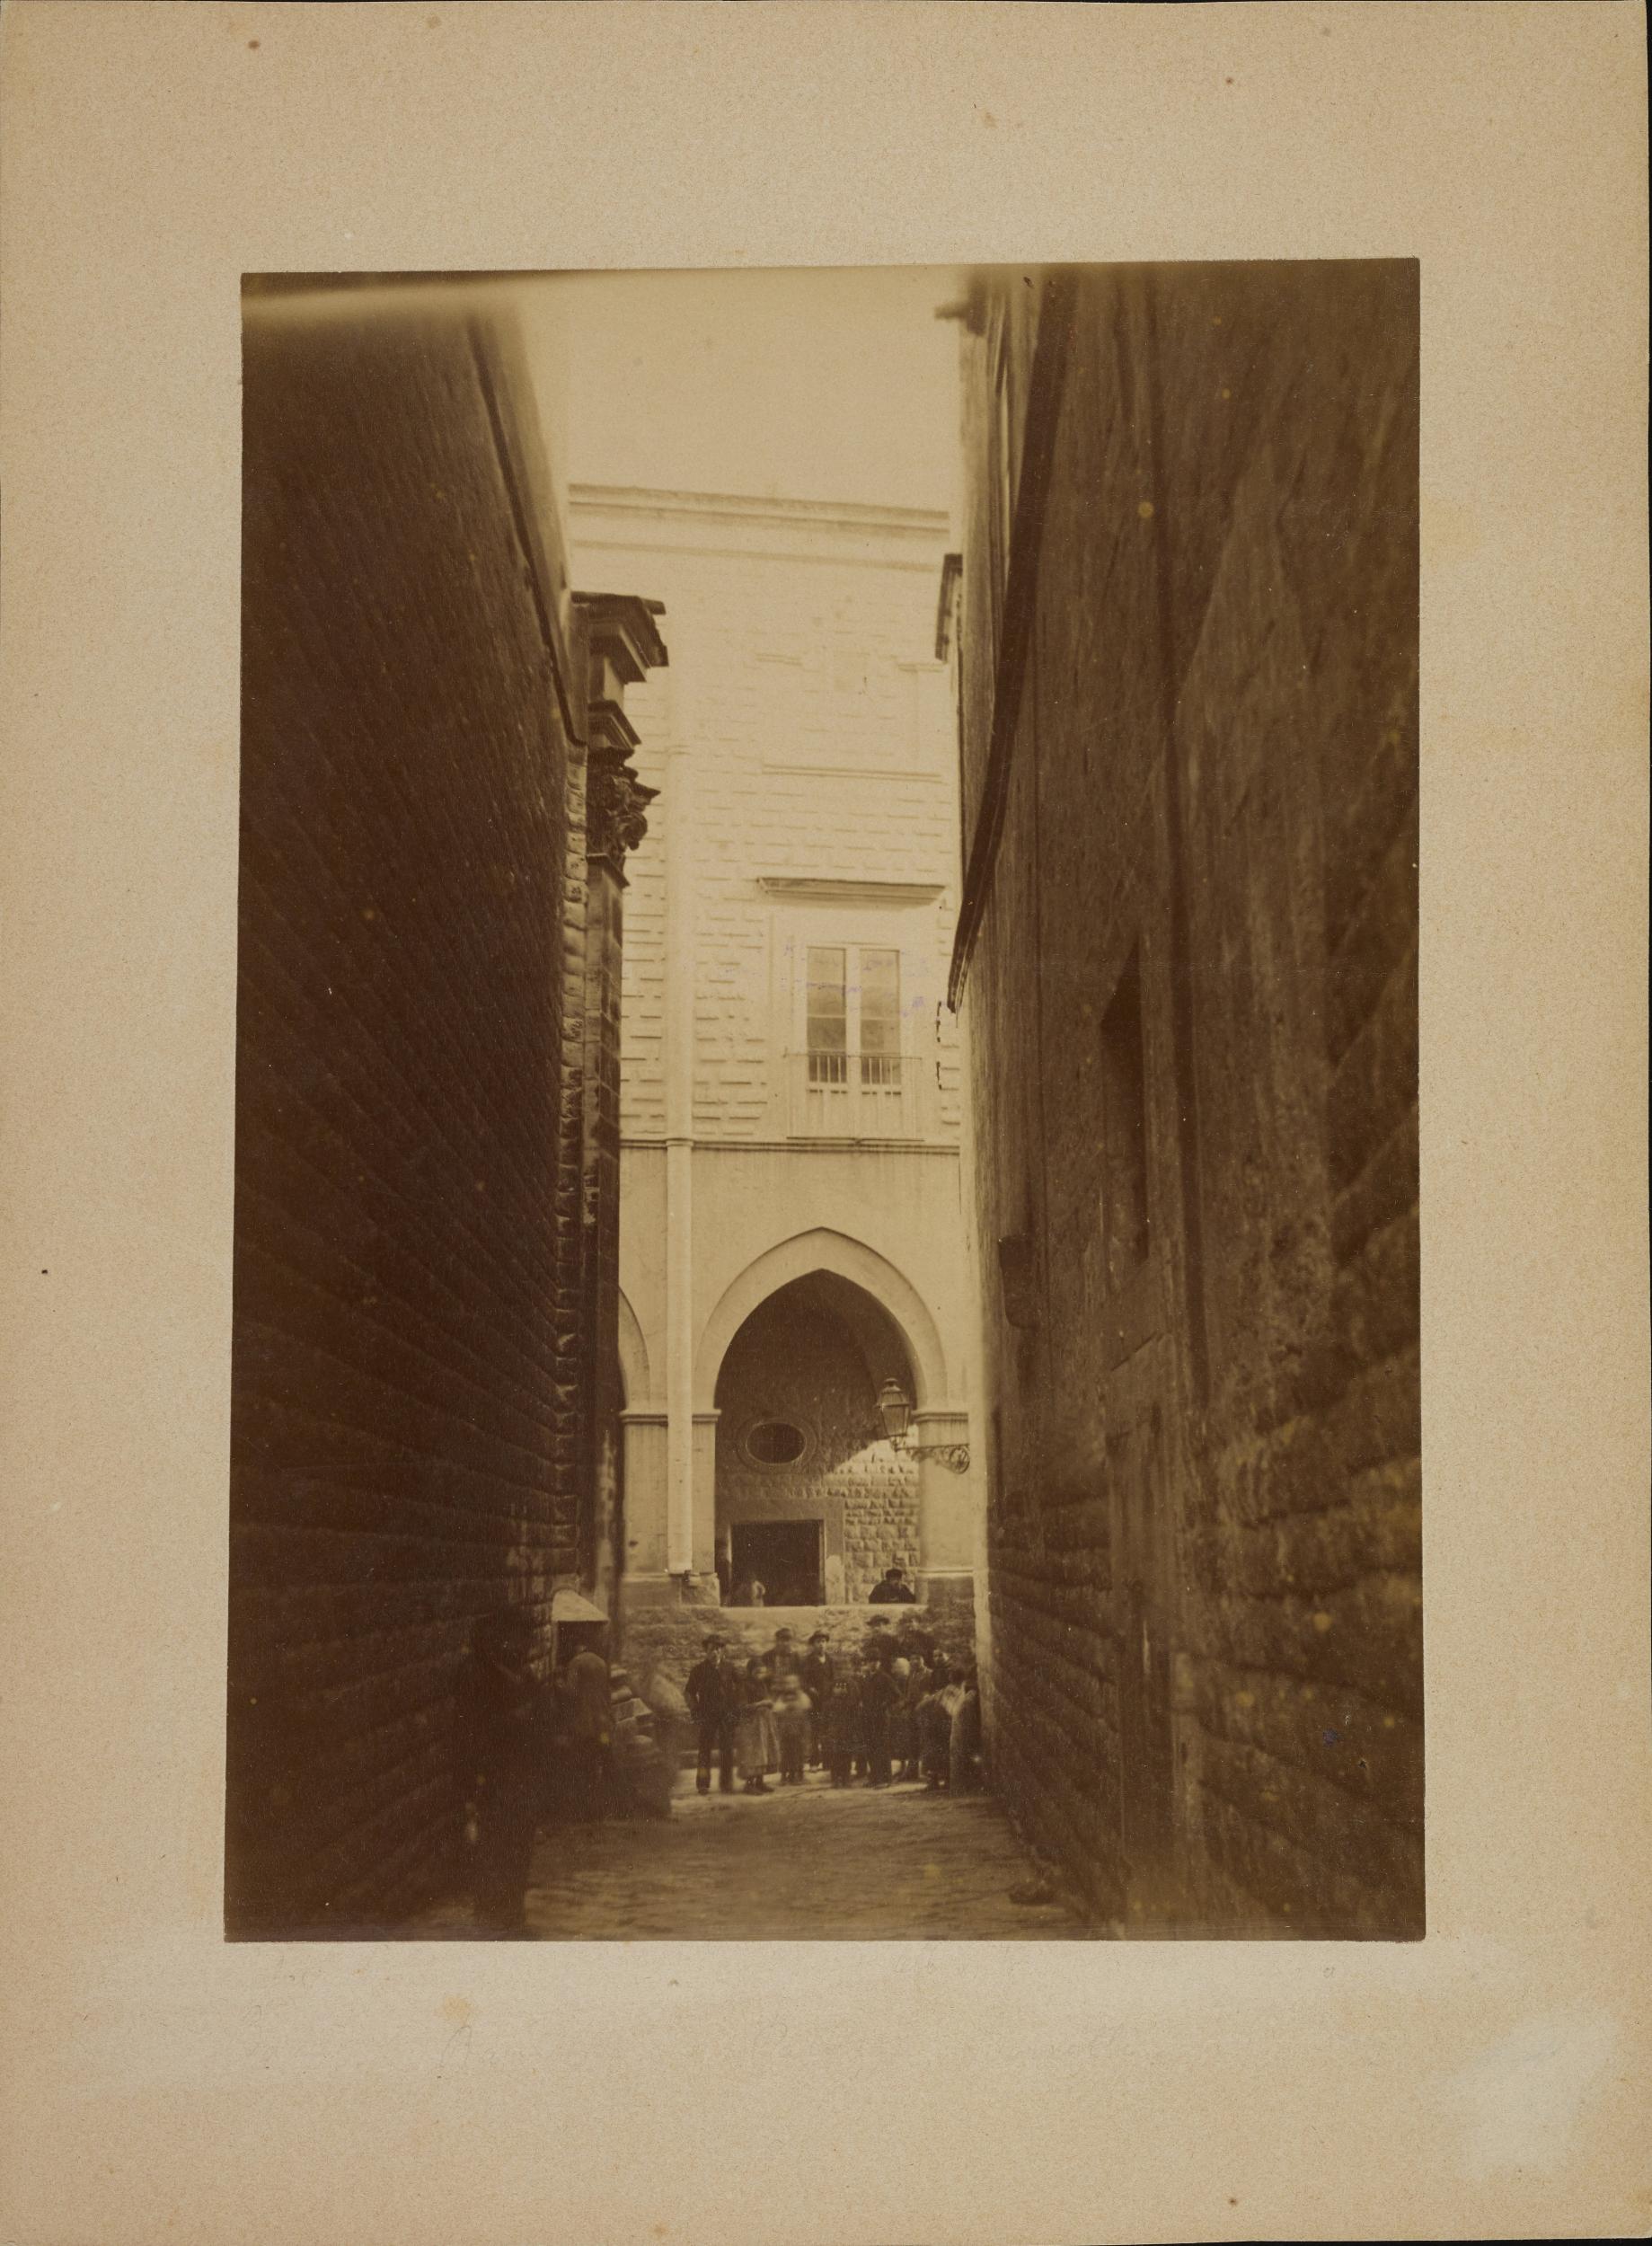 Fotografo non identificato, Barletta - Palazzo Bonelli, 1880 ca., albumina/carta, MPI312828